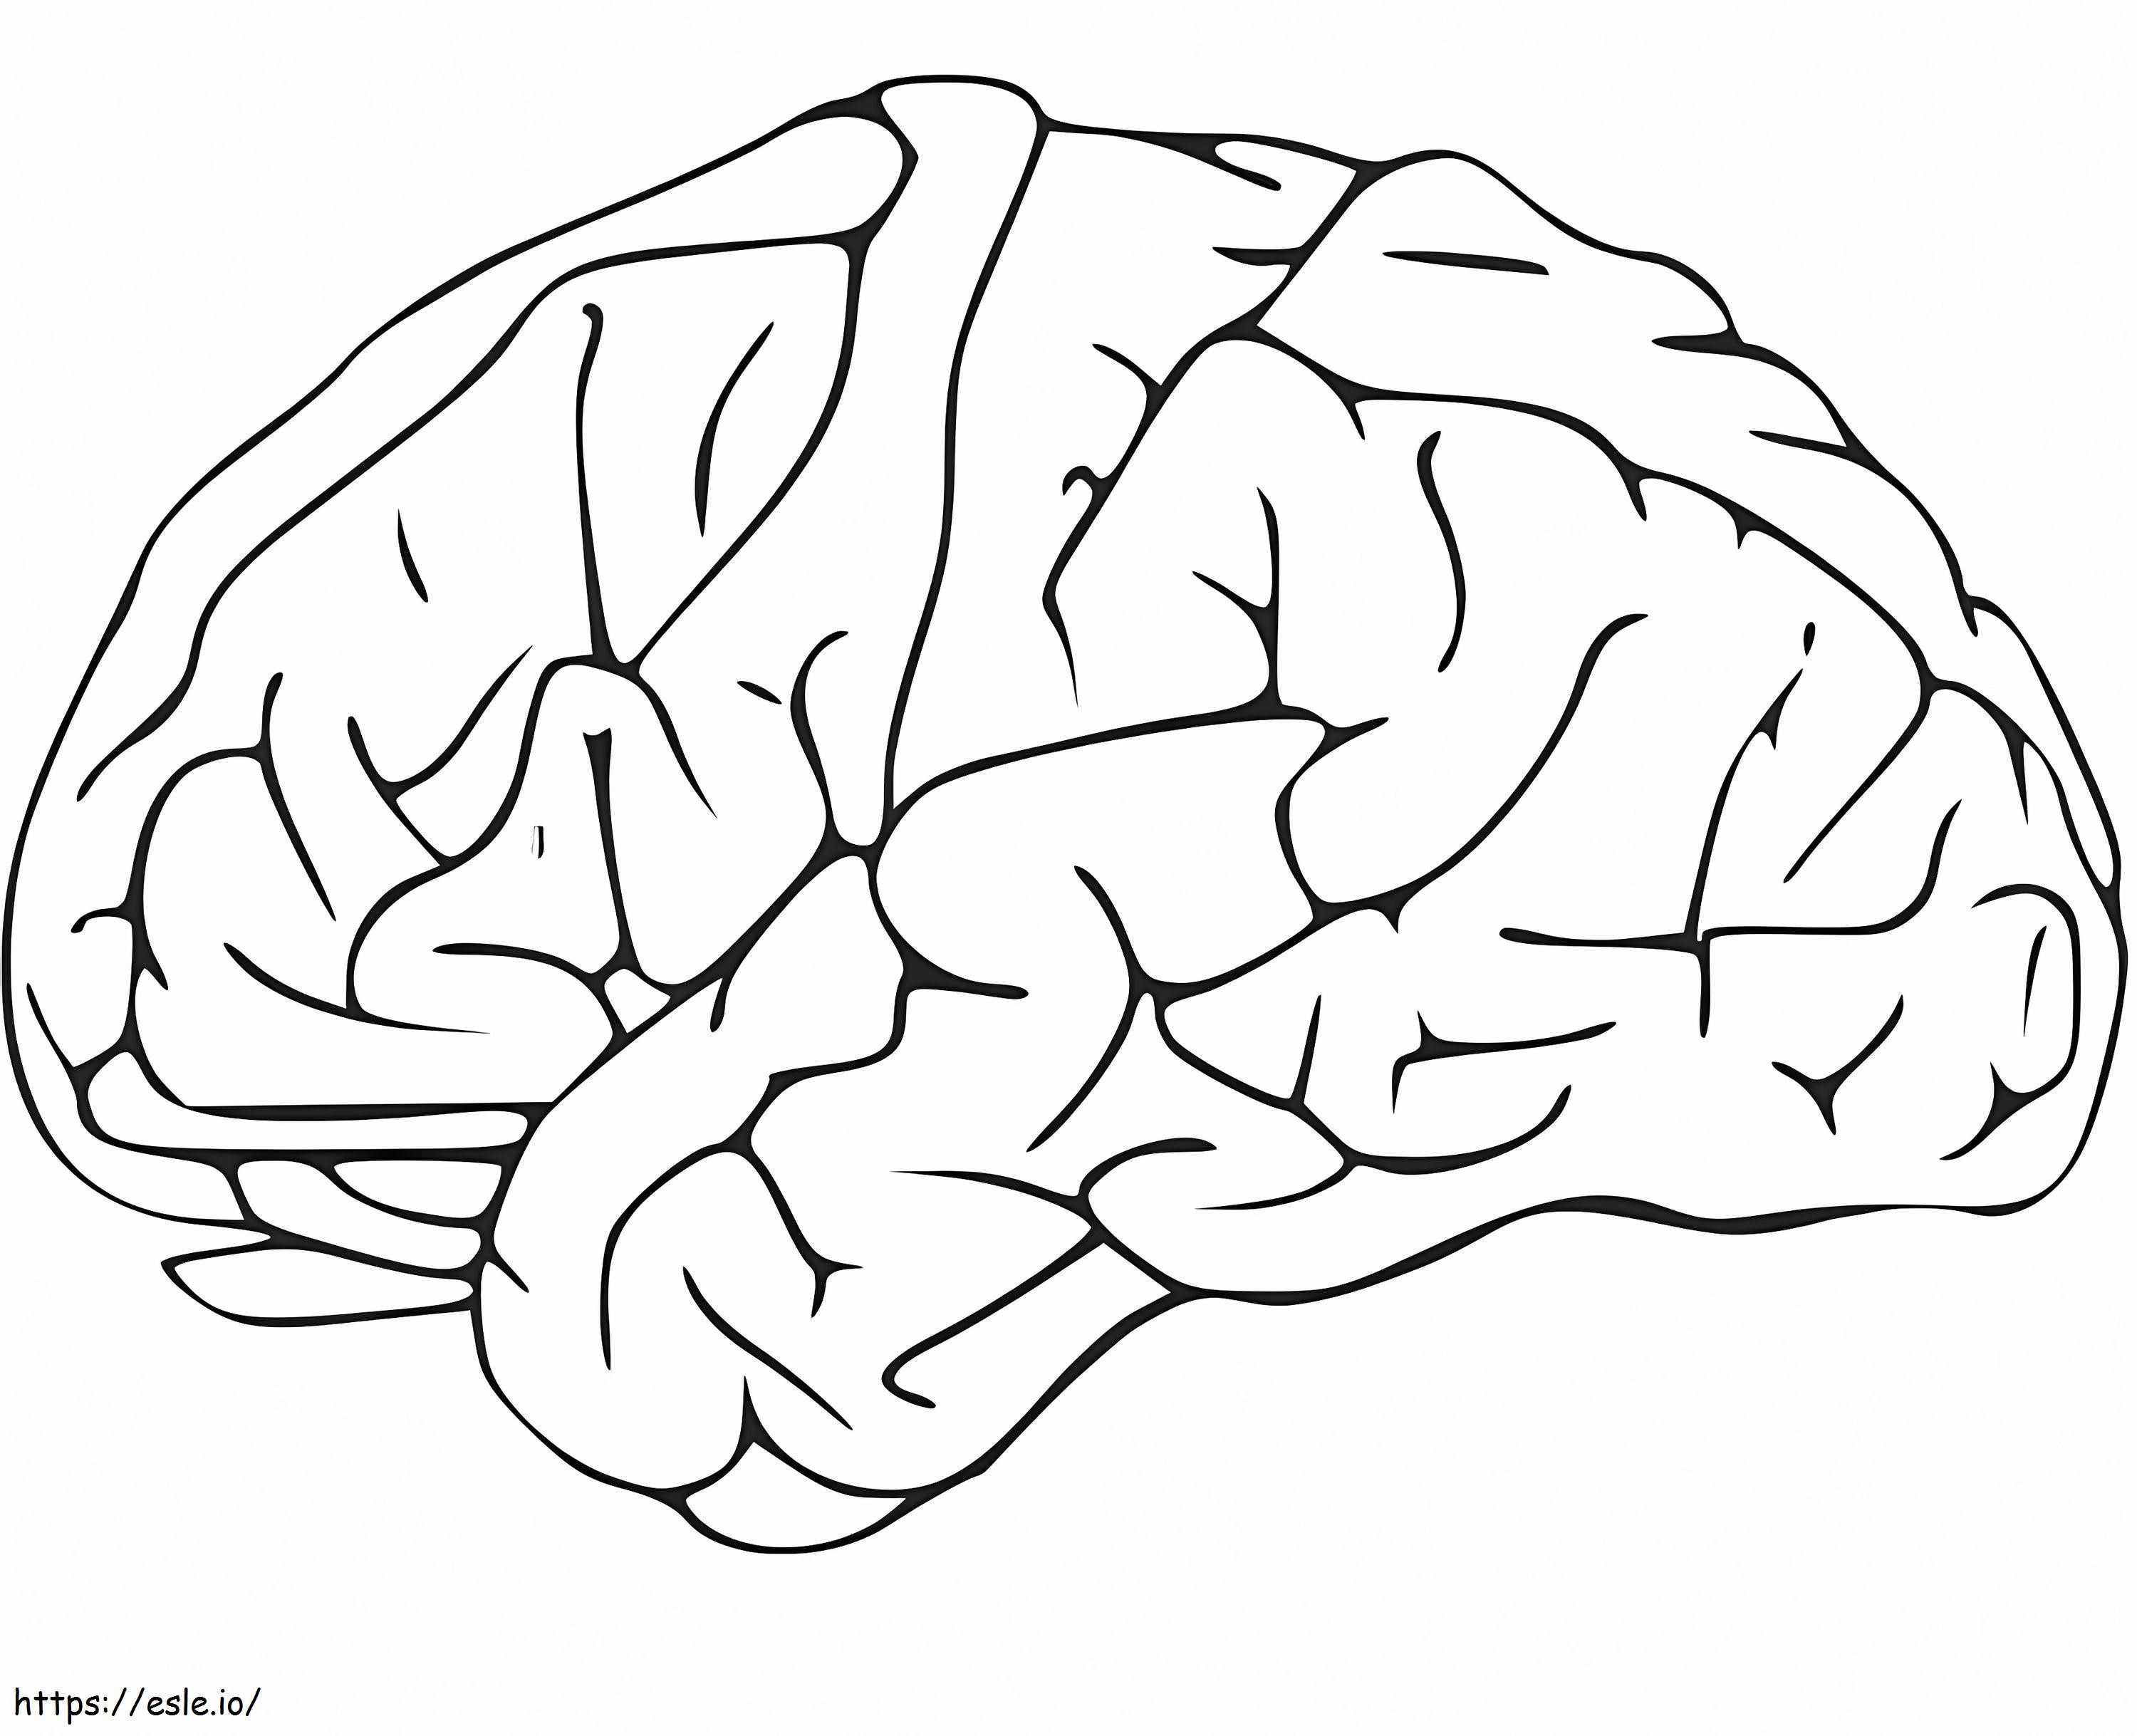 Menschliches Gehirn 10 ausmalbilder